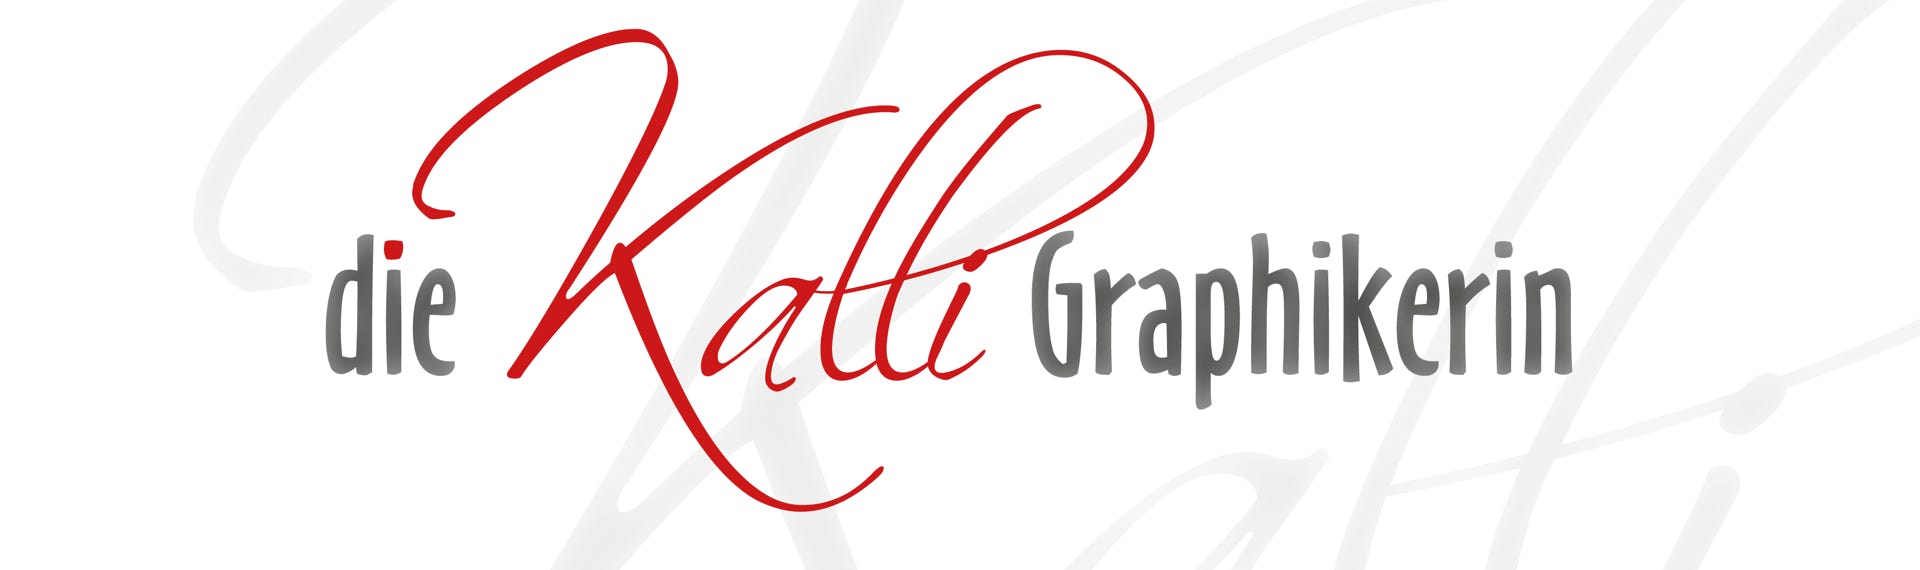 Logo Kalligraphikerin